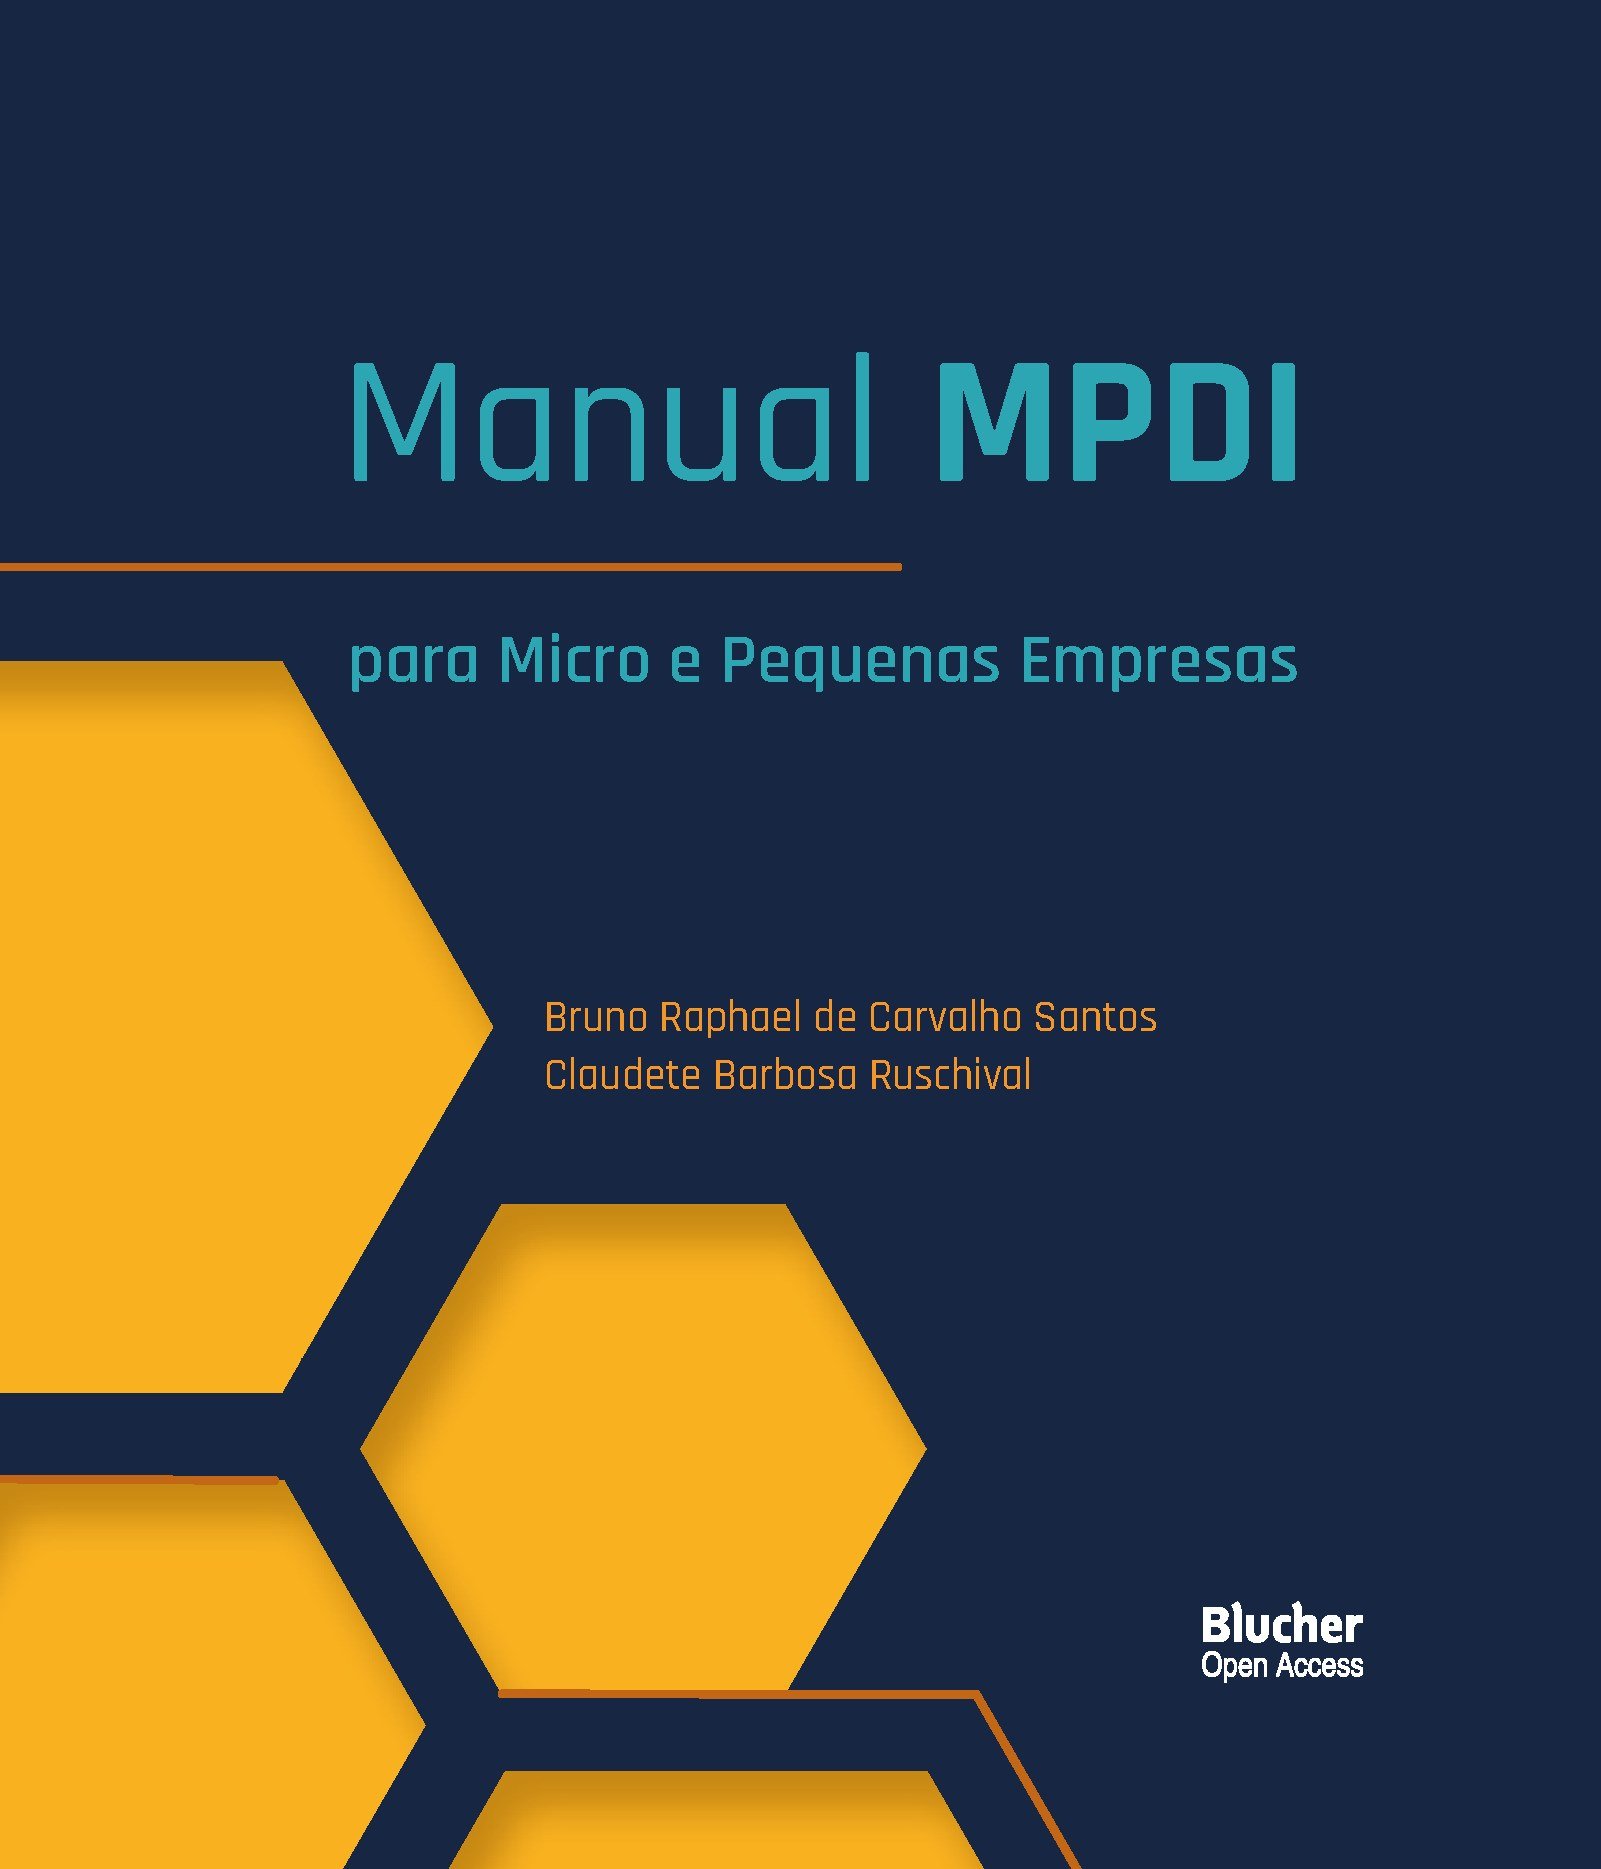 Manual MPDI: Para Micro e Pequenas Empresas